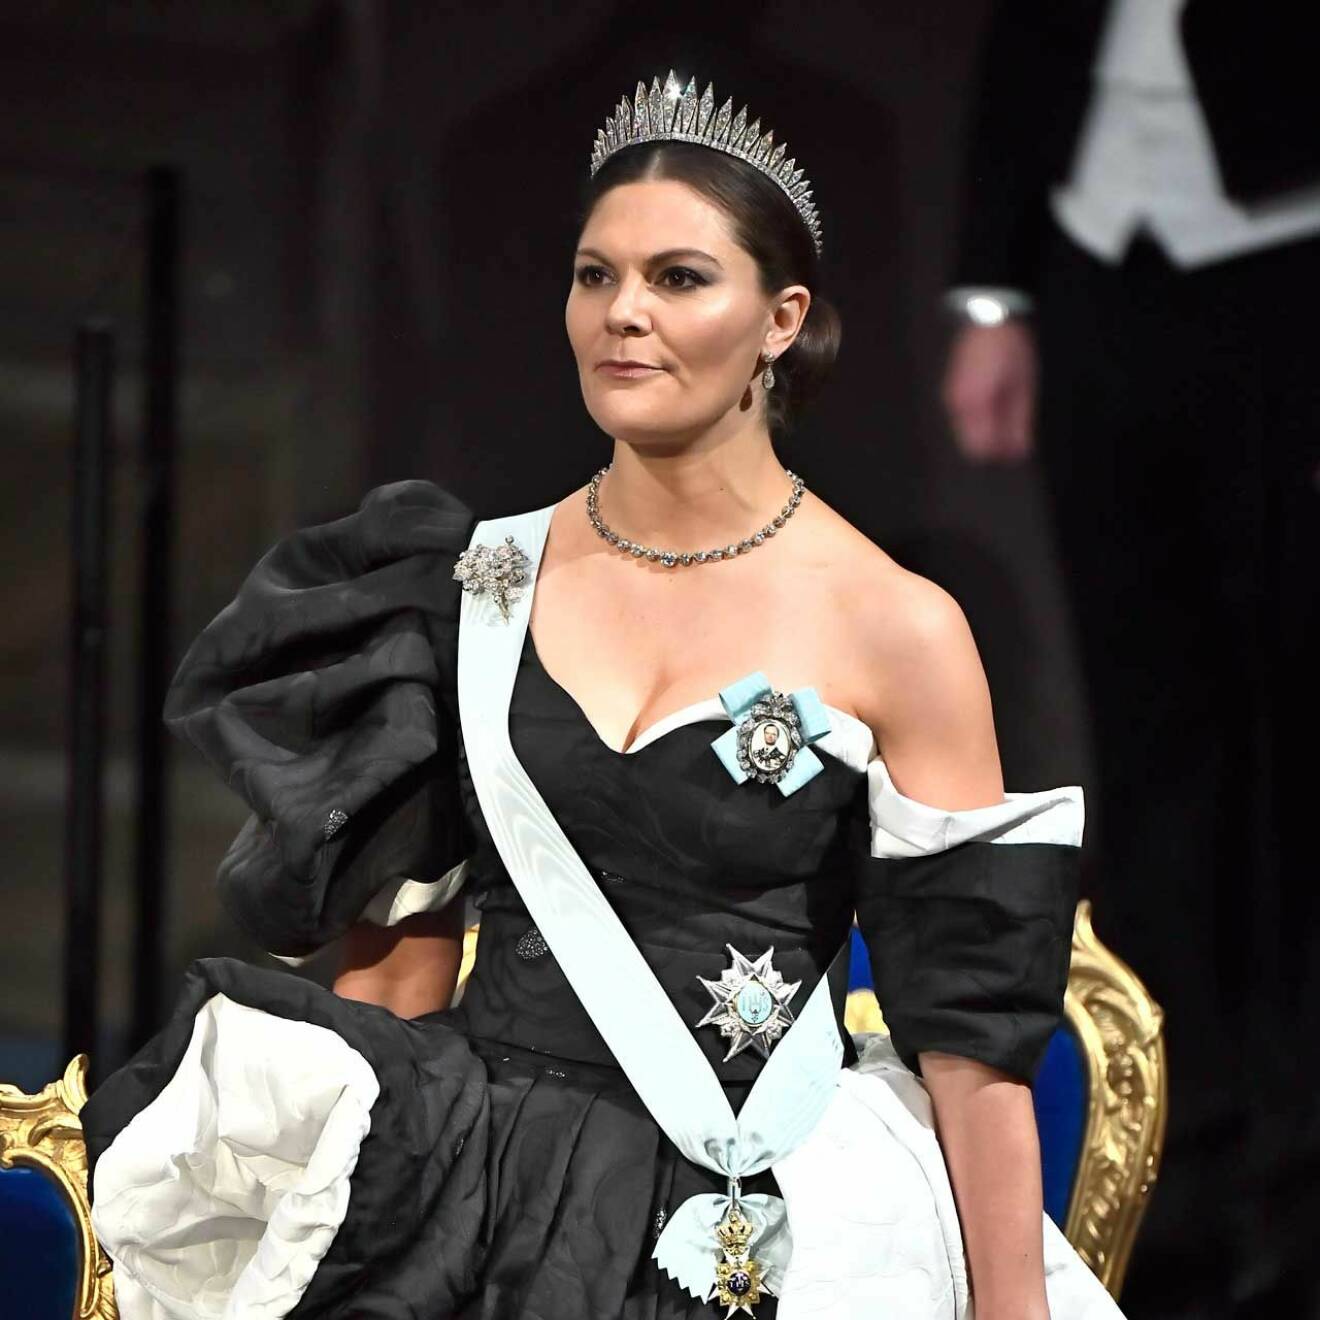 Victorias Nobelklänning 2019 skapad av Selam Fessahaye.